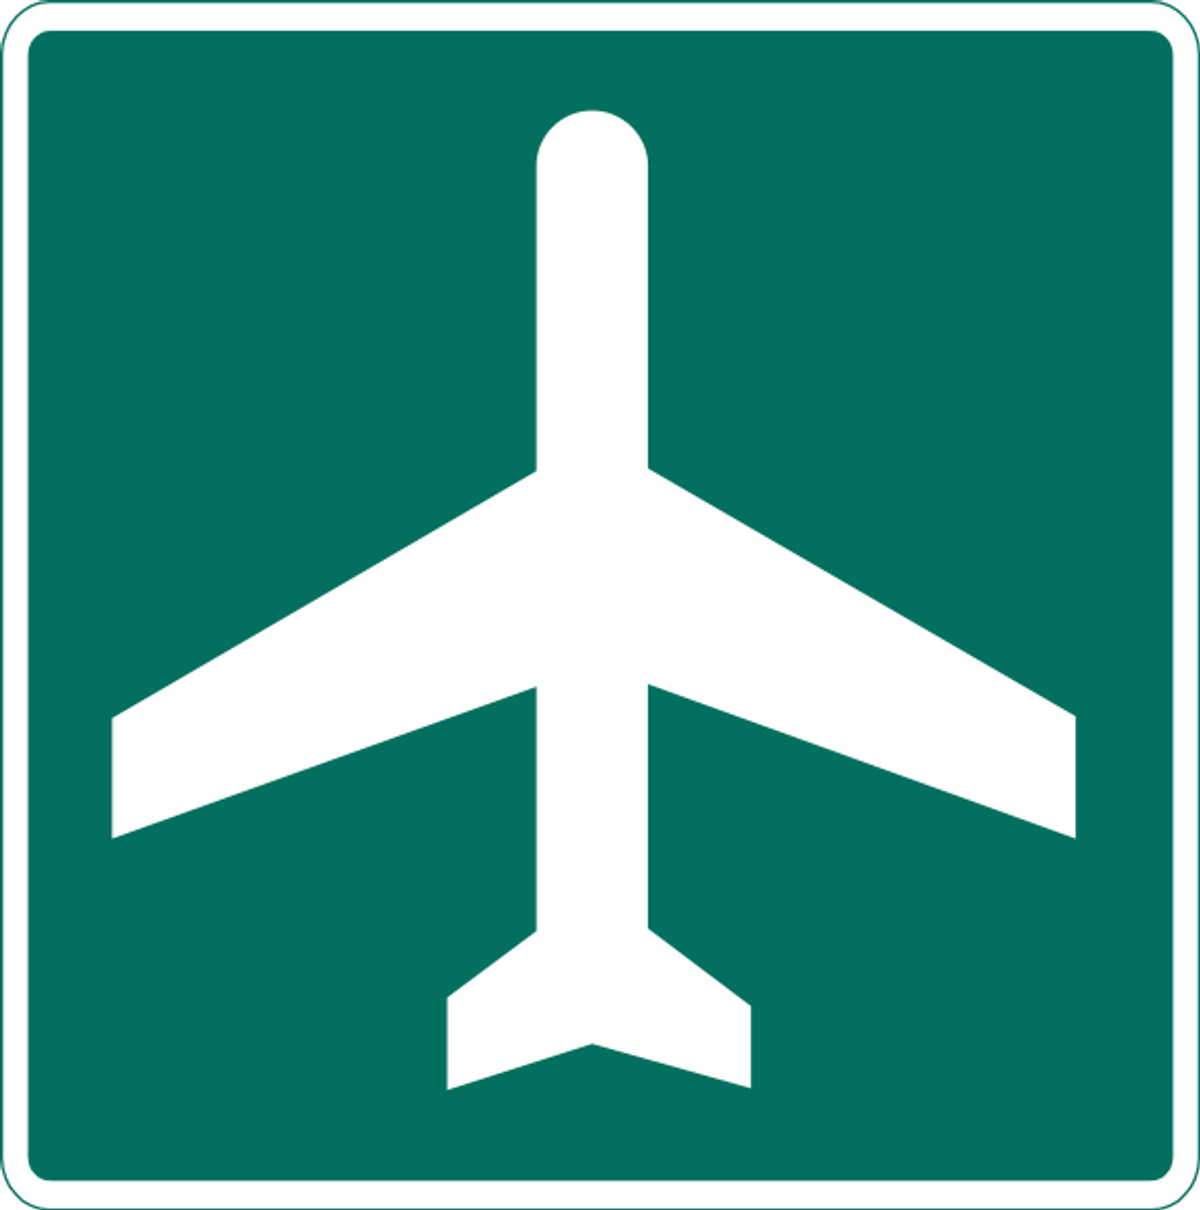 MUTCD-standard Airport road sign